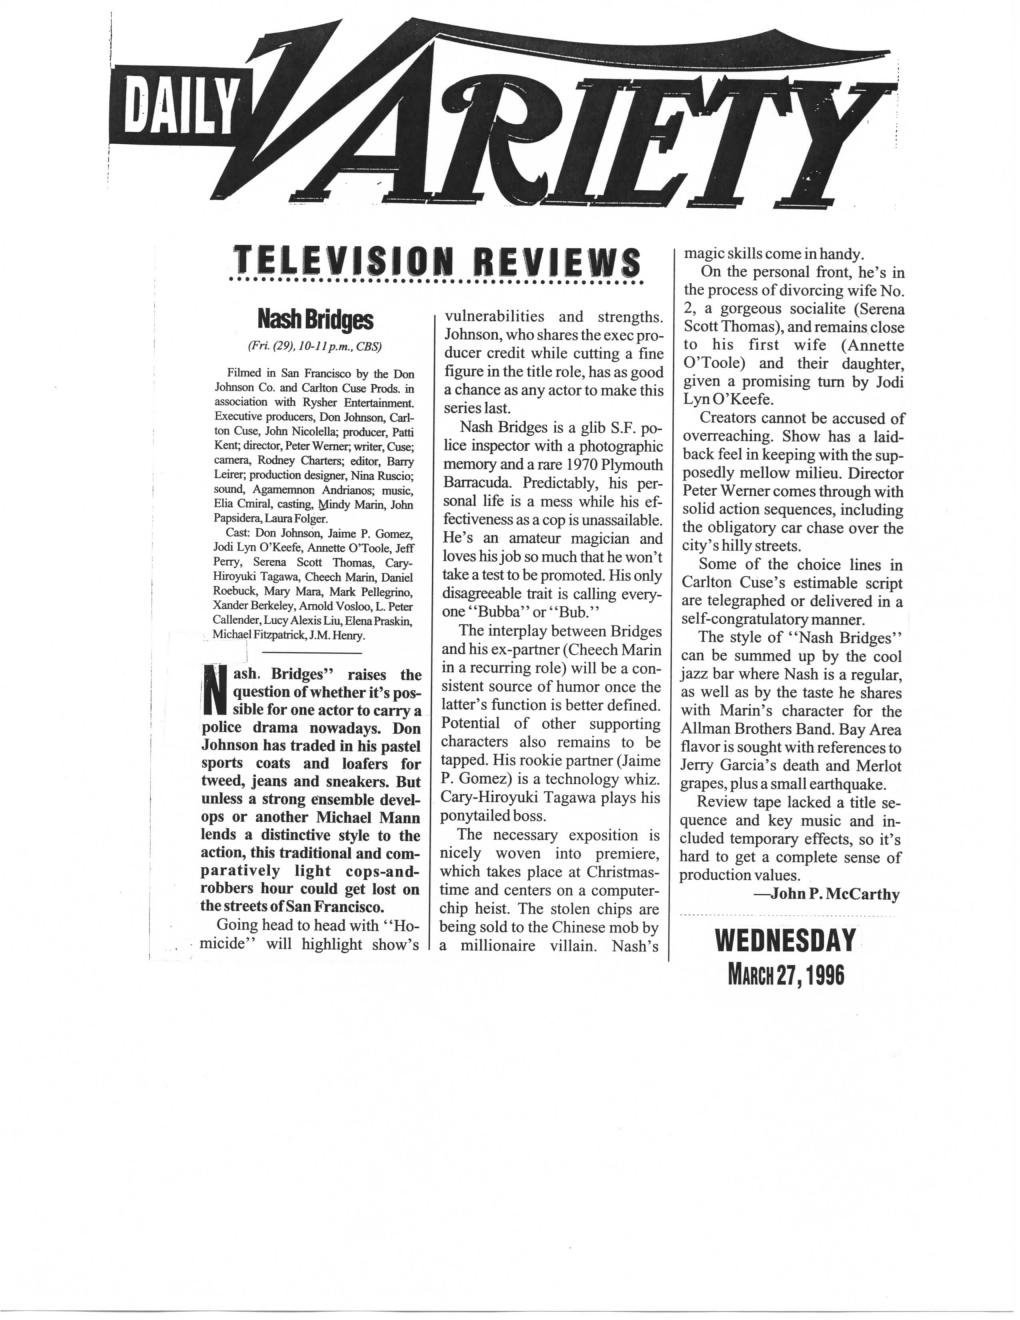 TELEVISION REVIEWS Nash Bridges